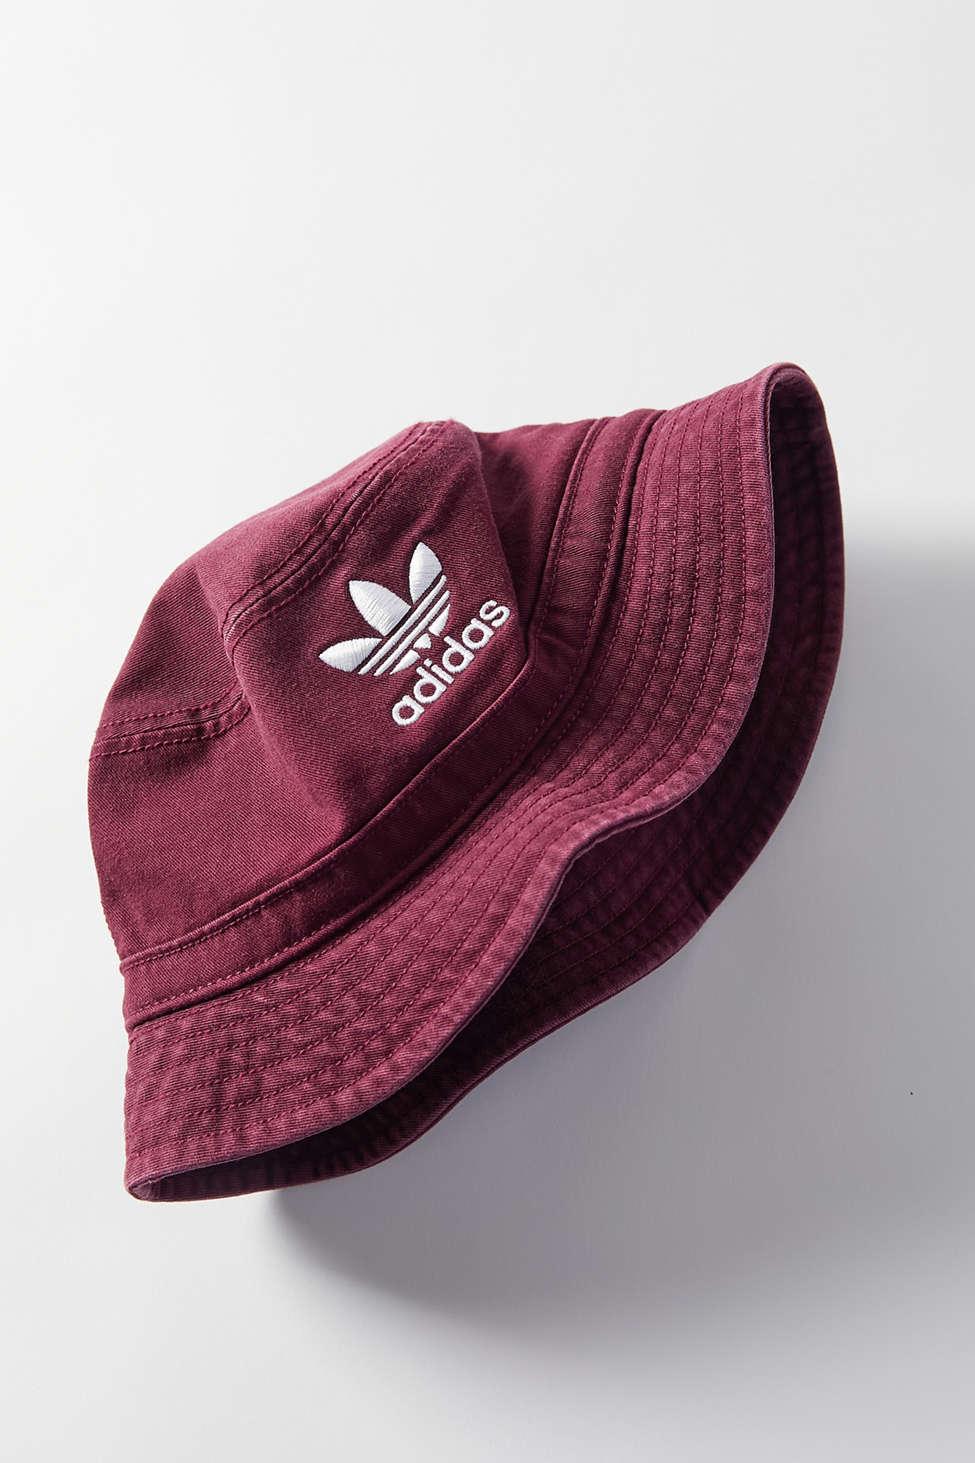 adidas Originals Soft Denim Bucket Hat in Maroon (Purple) | Lyst